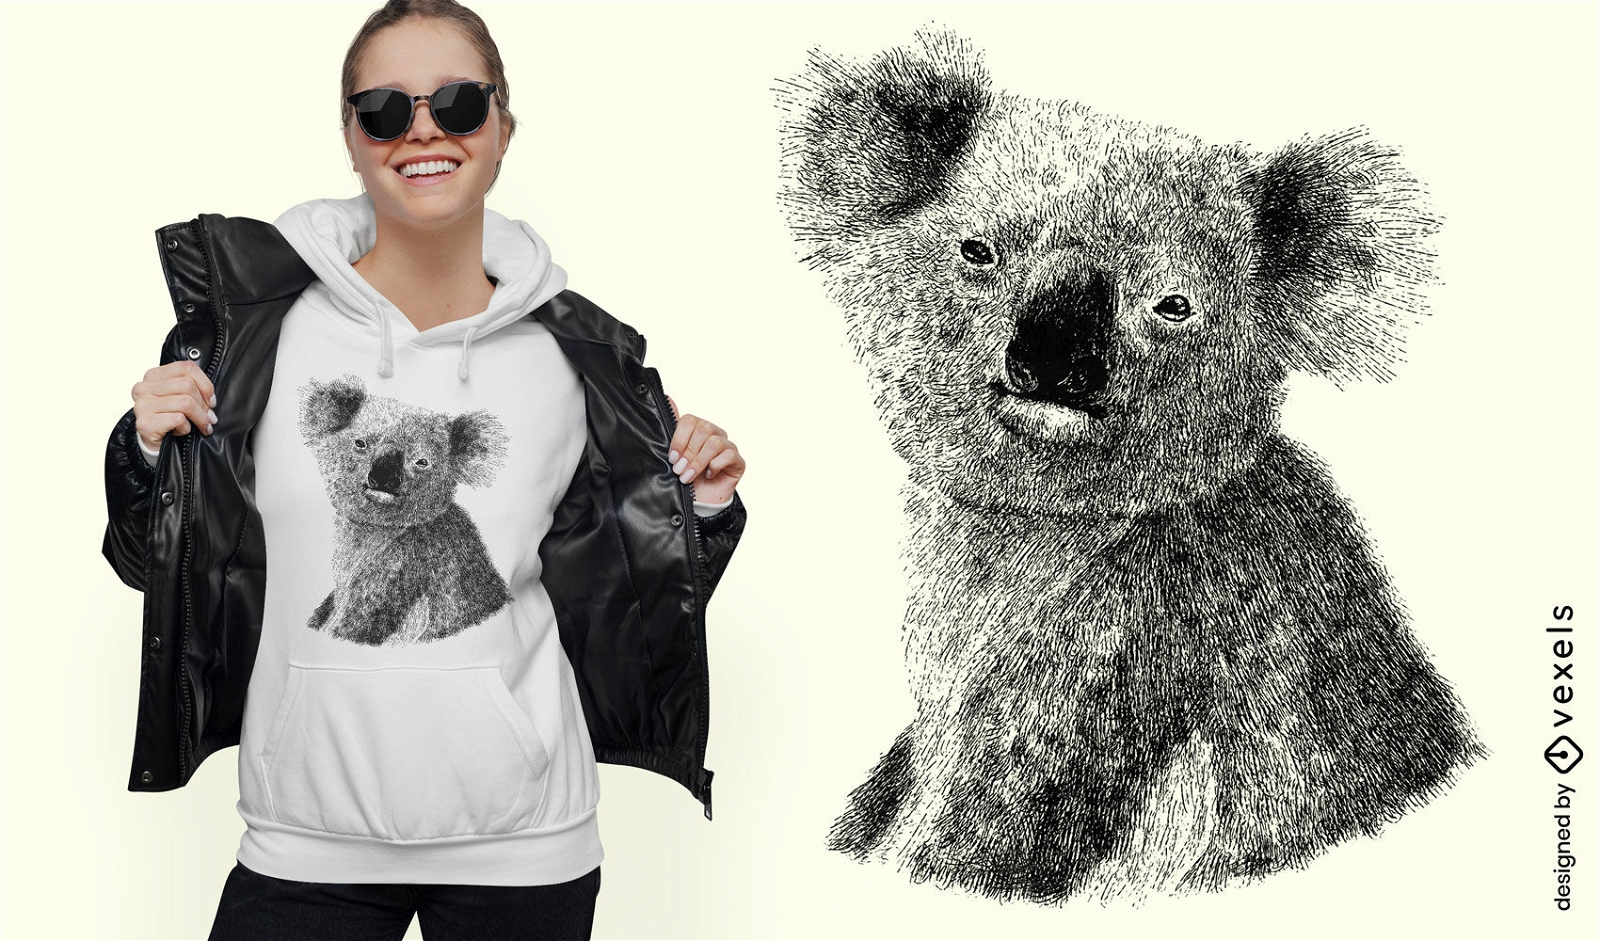 Dise?o de camiseta de koala dibujado a mano